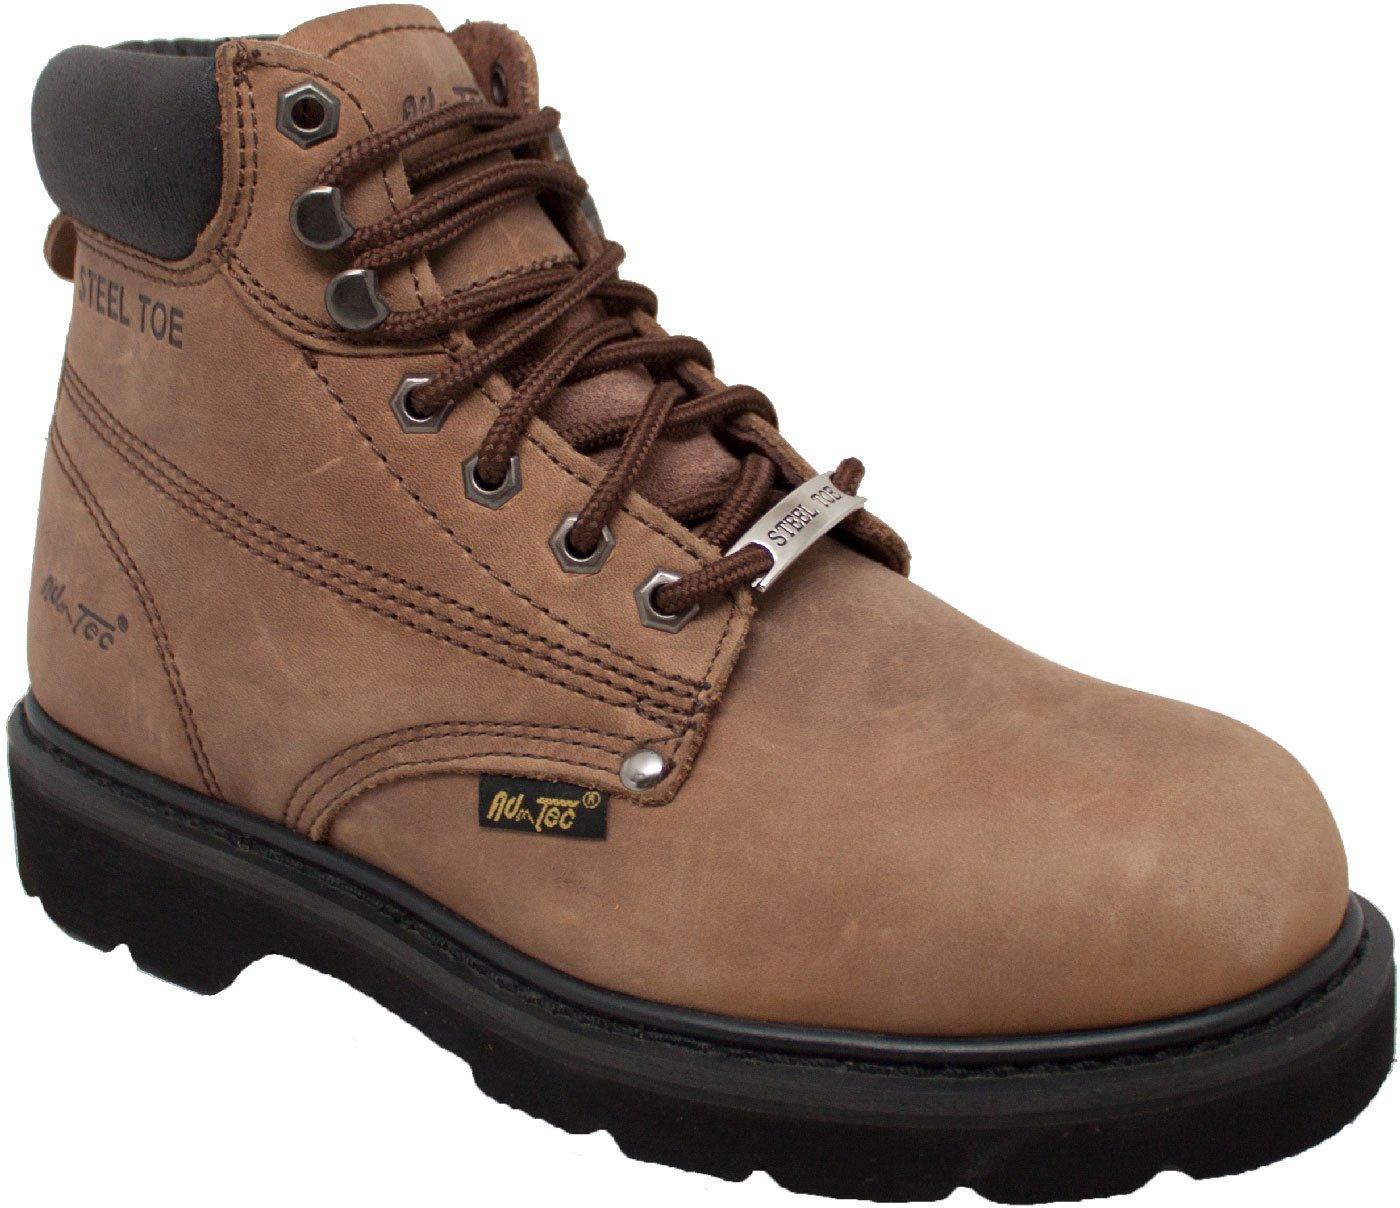 AdTec Mens Brown Steel Toe Work Boots